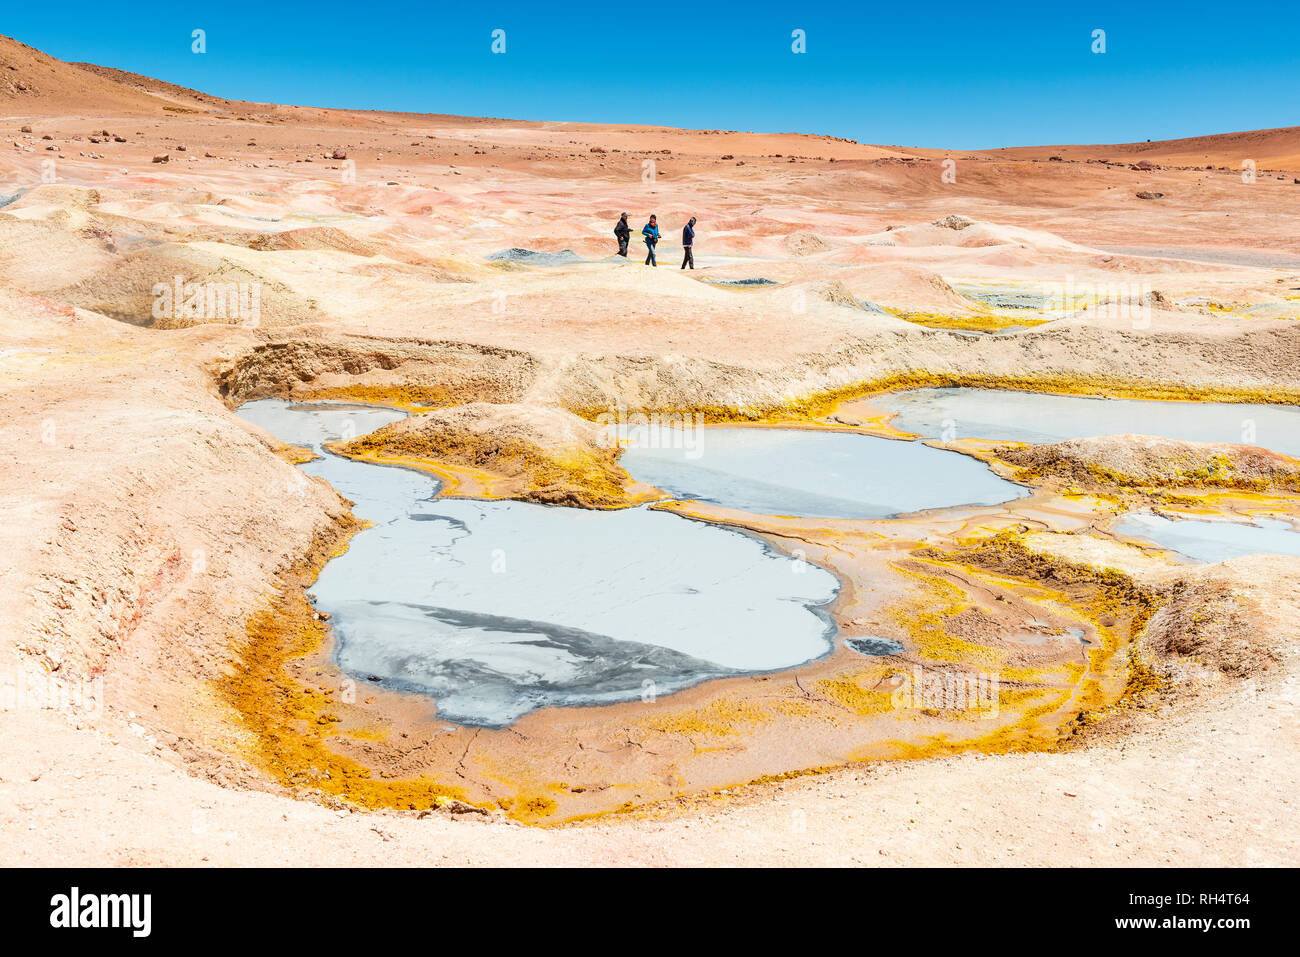 Trois touristes marcher par la boue des fosses, des fumerolles et des geysers de Sol de Manana près de la télévision sel Uyuni (Salar de Uyuni) dans l'Altiplano de Bolivie. Banque D'Images